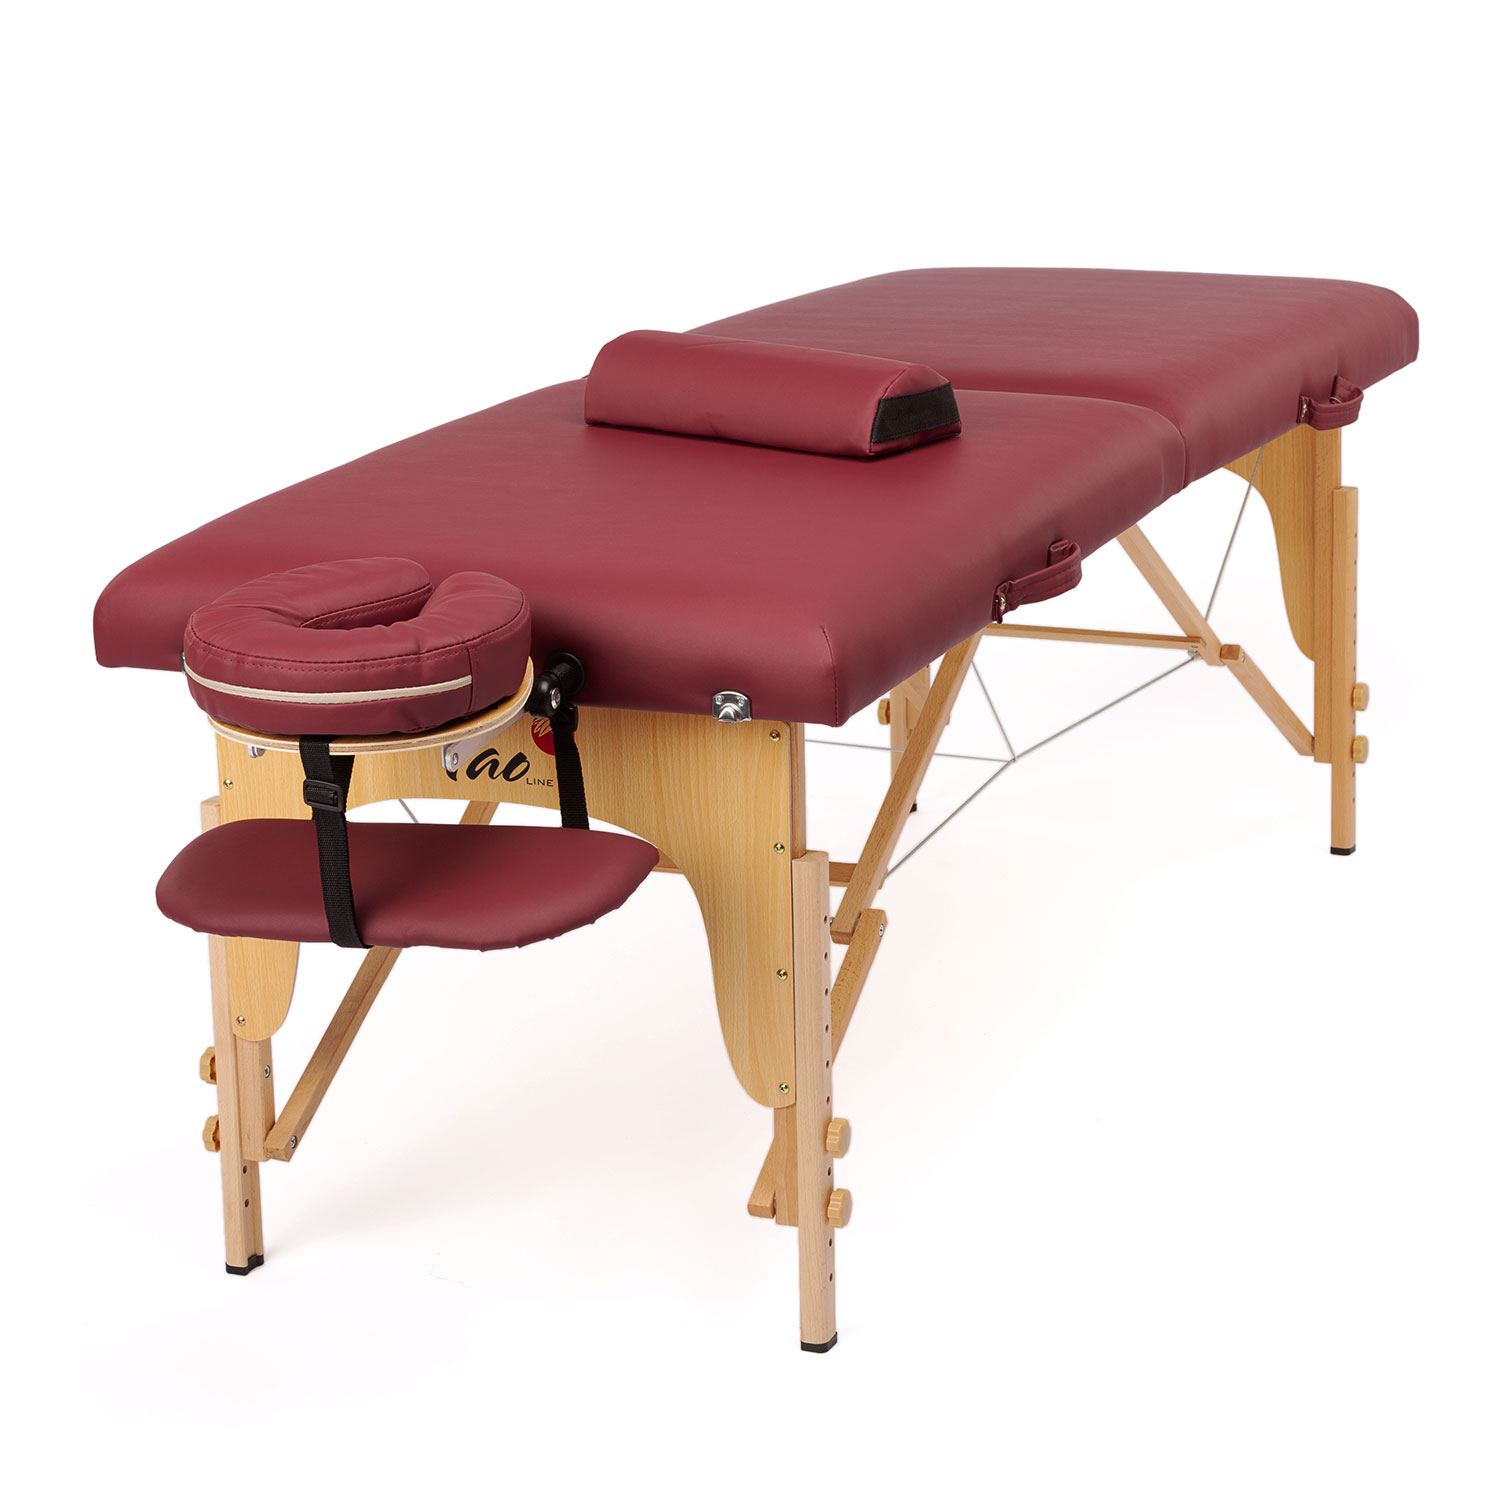 Massageauflage - Selbstmassage im Liegen und Sitzen